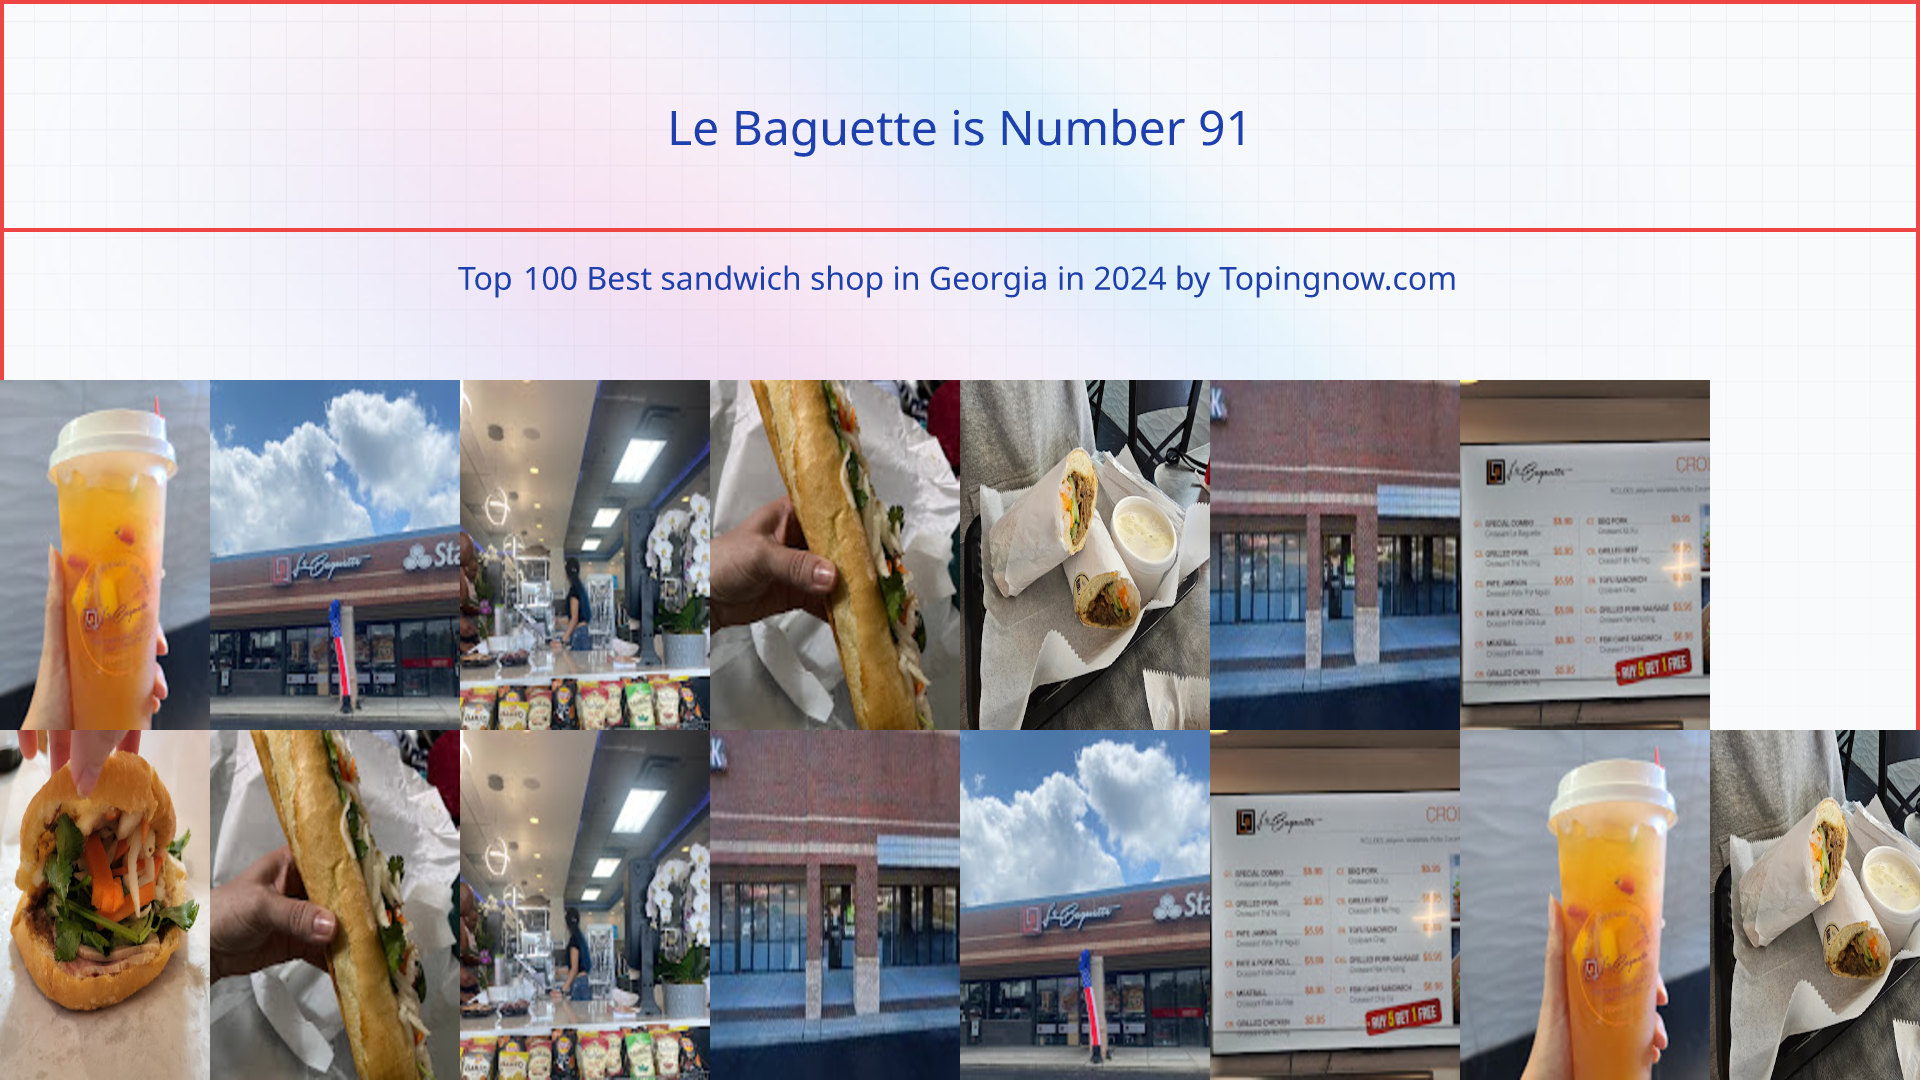 Le Baguette: Top 100 Best sandwich shop in Georgia in 2024